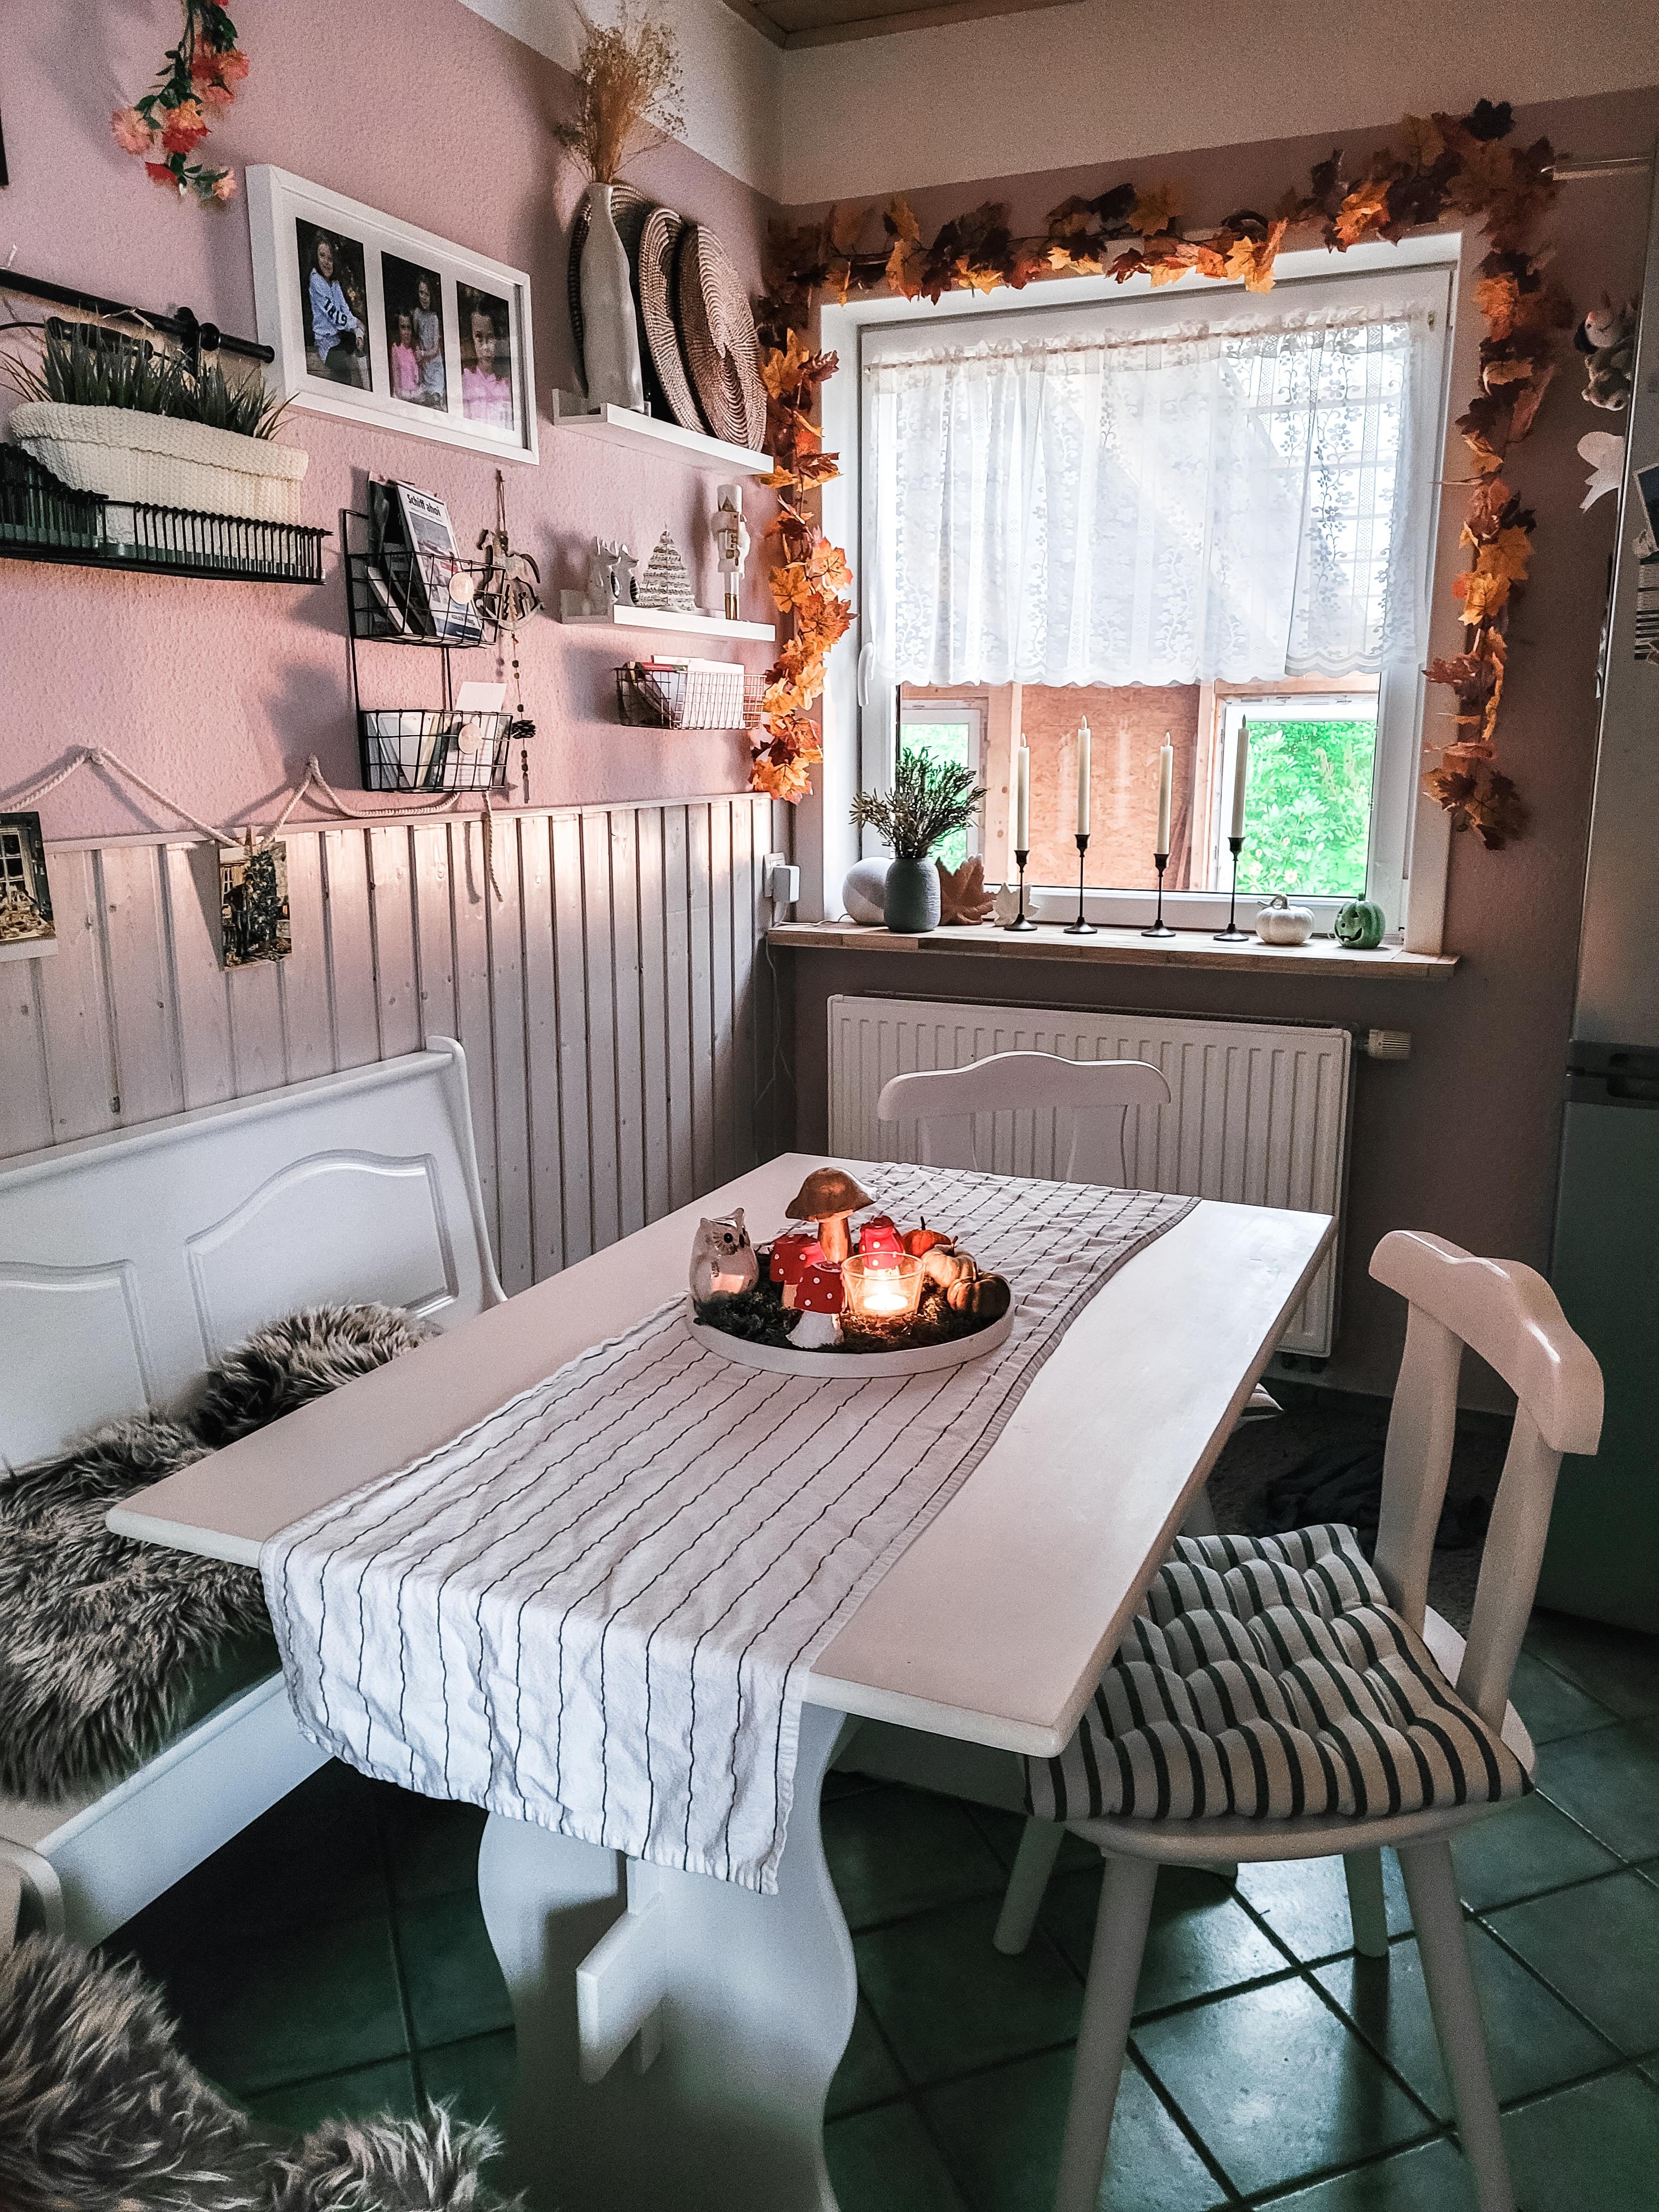 Unsere kuschelige Sitzecke in der Küche🤗!
#kücheninspiration #fotografie #küche #küchenstory #sitzecke #essecke 